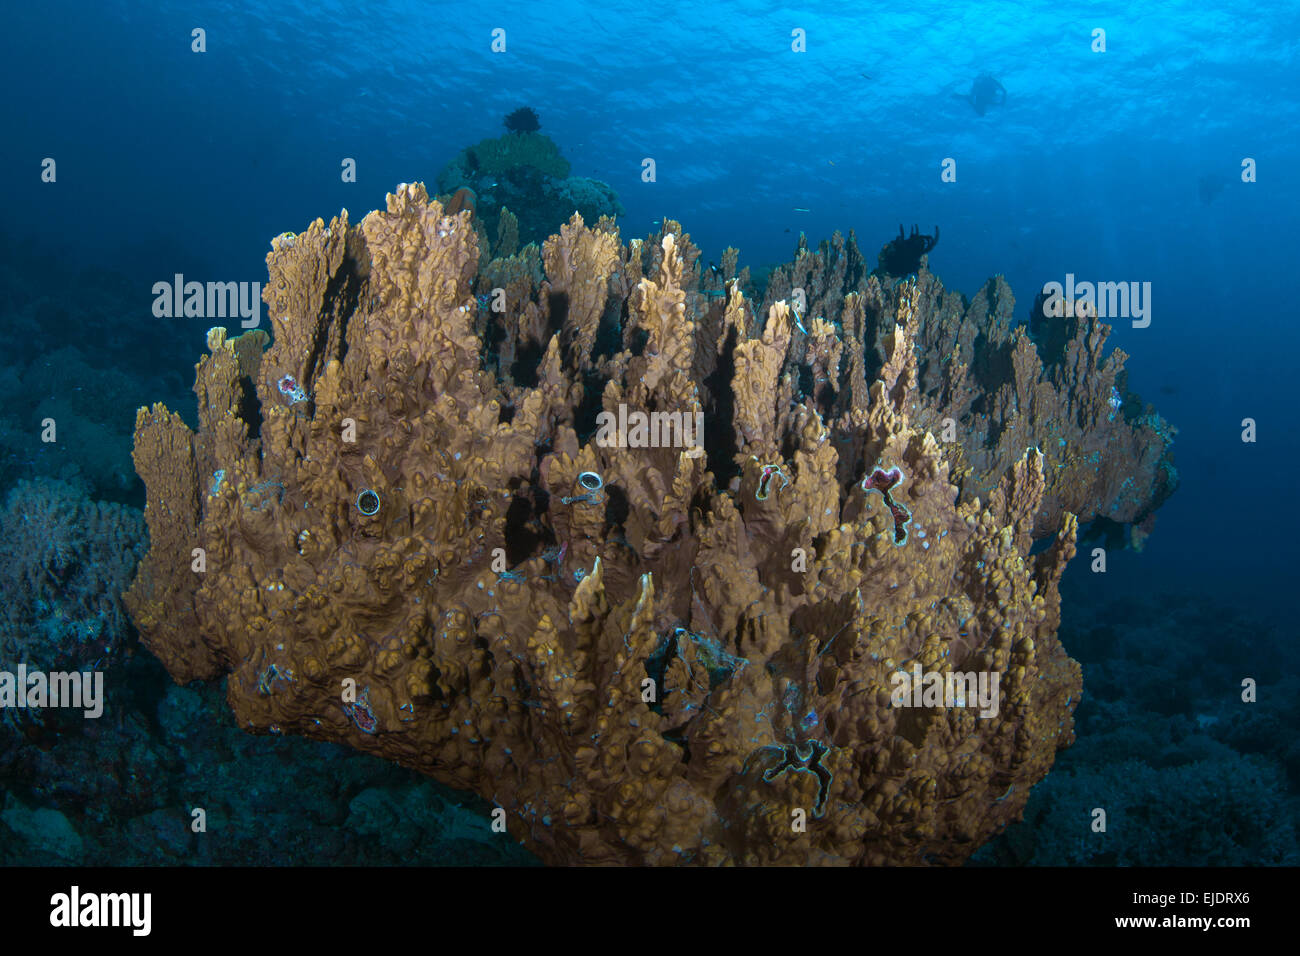 Disque dur en colonnes de corail (Montipora sp.) semble flotter au-dessus de la mer, les plongeurs qui se profile en arrière-plan d'eau bleu. Banque D'Images